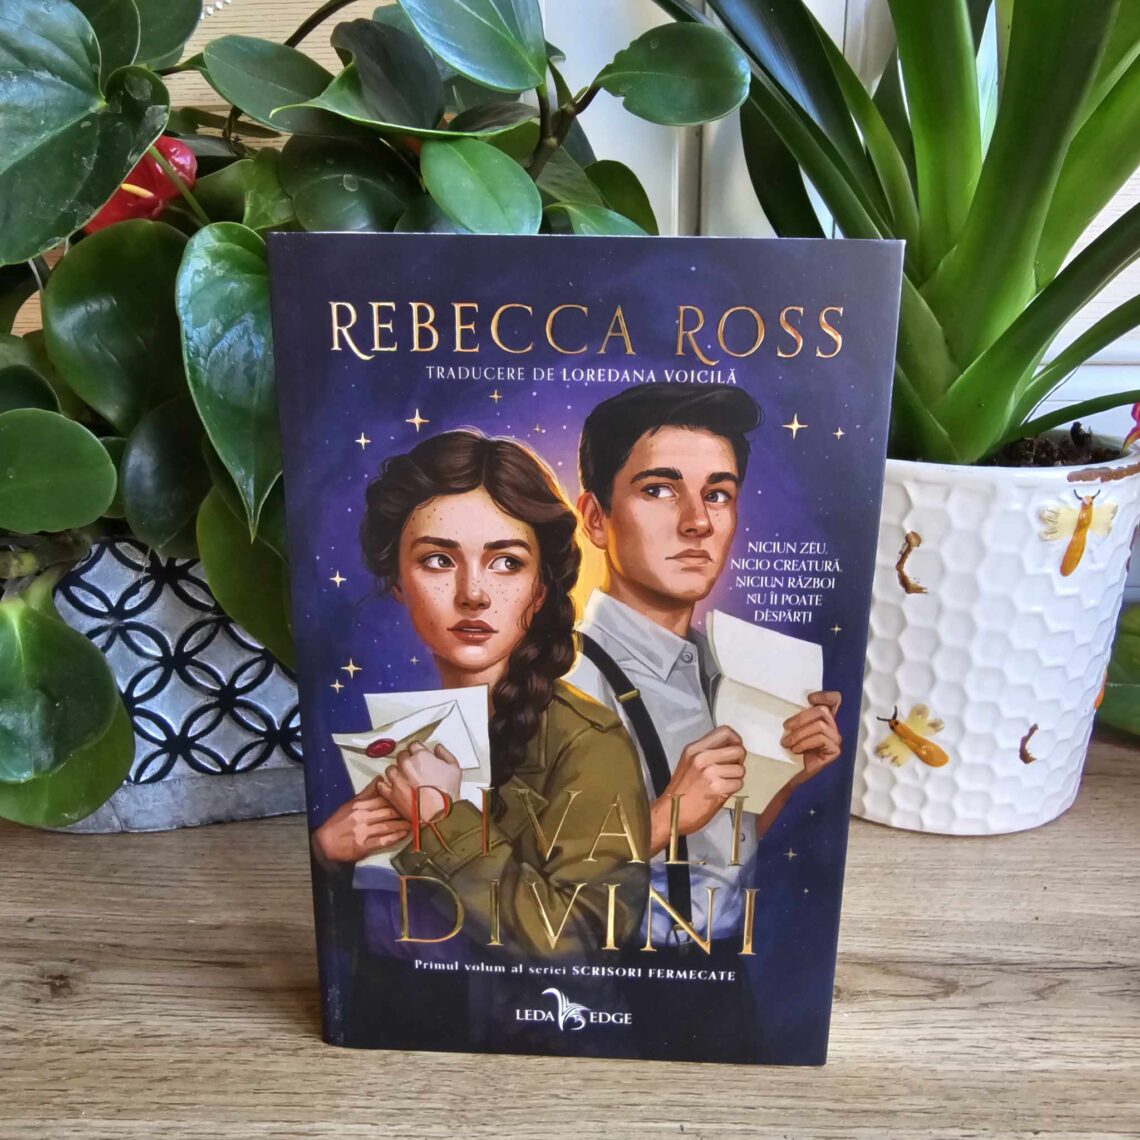 Rivali divini. Seria Scrisori fermecate de Rebecca Ross, Editura Corint -  recenzie – Delicatese Literare